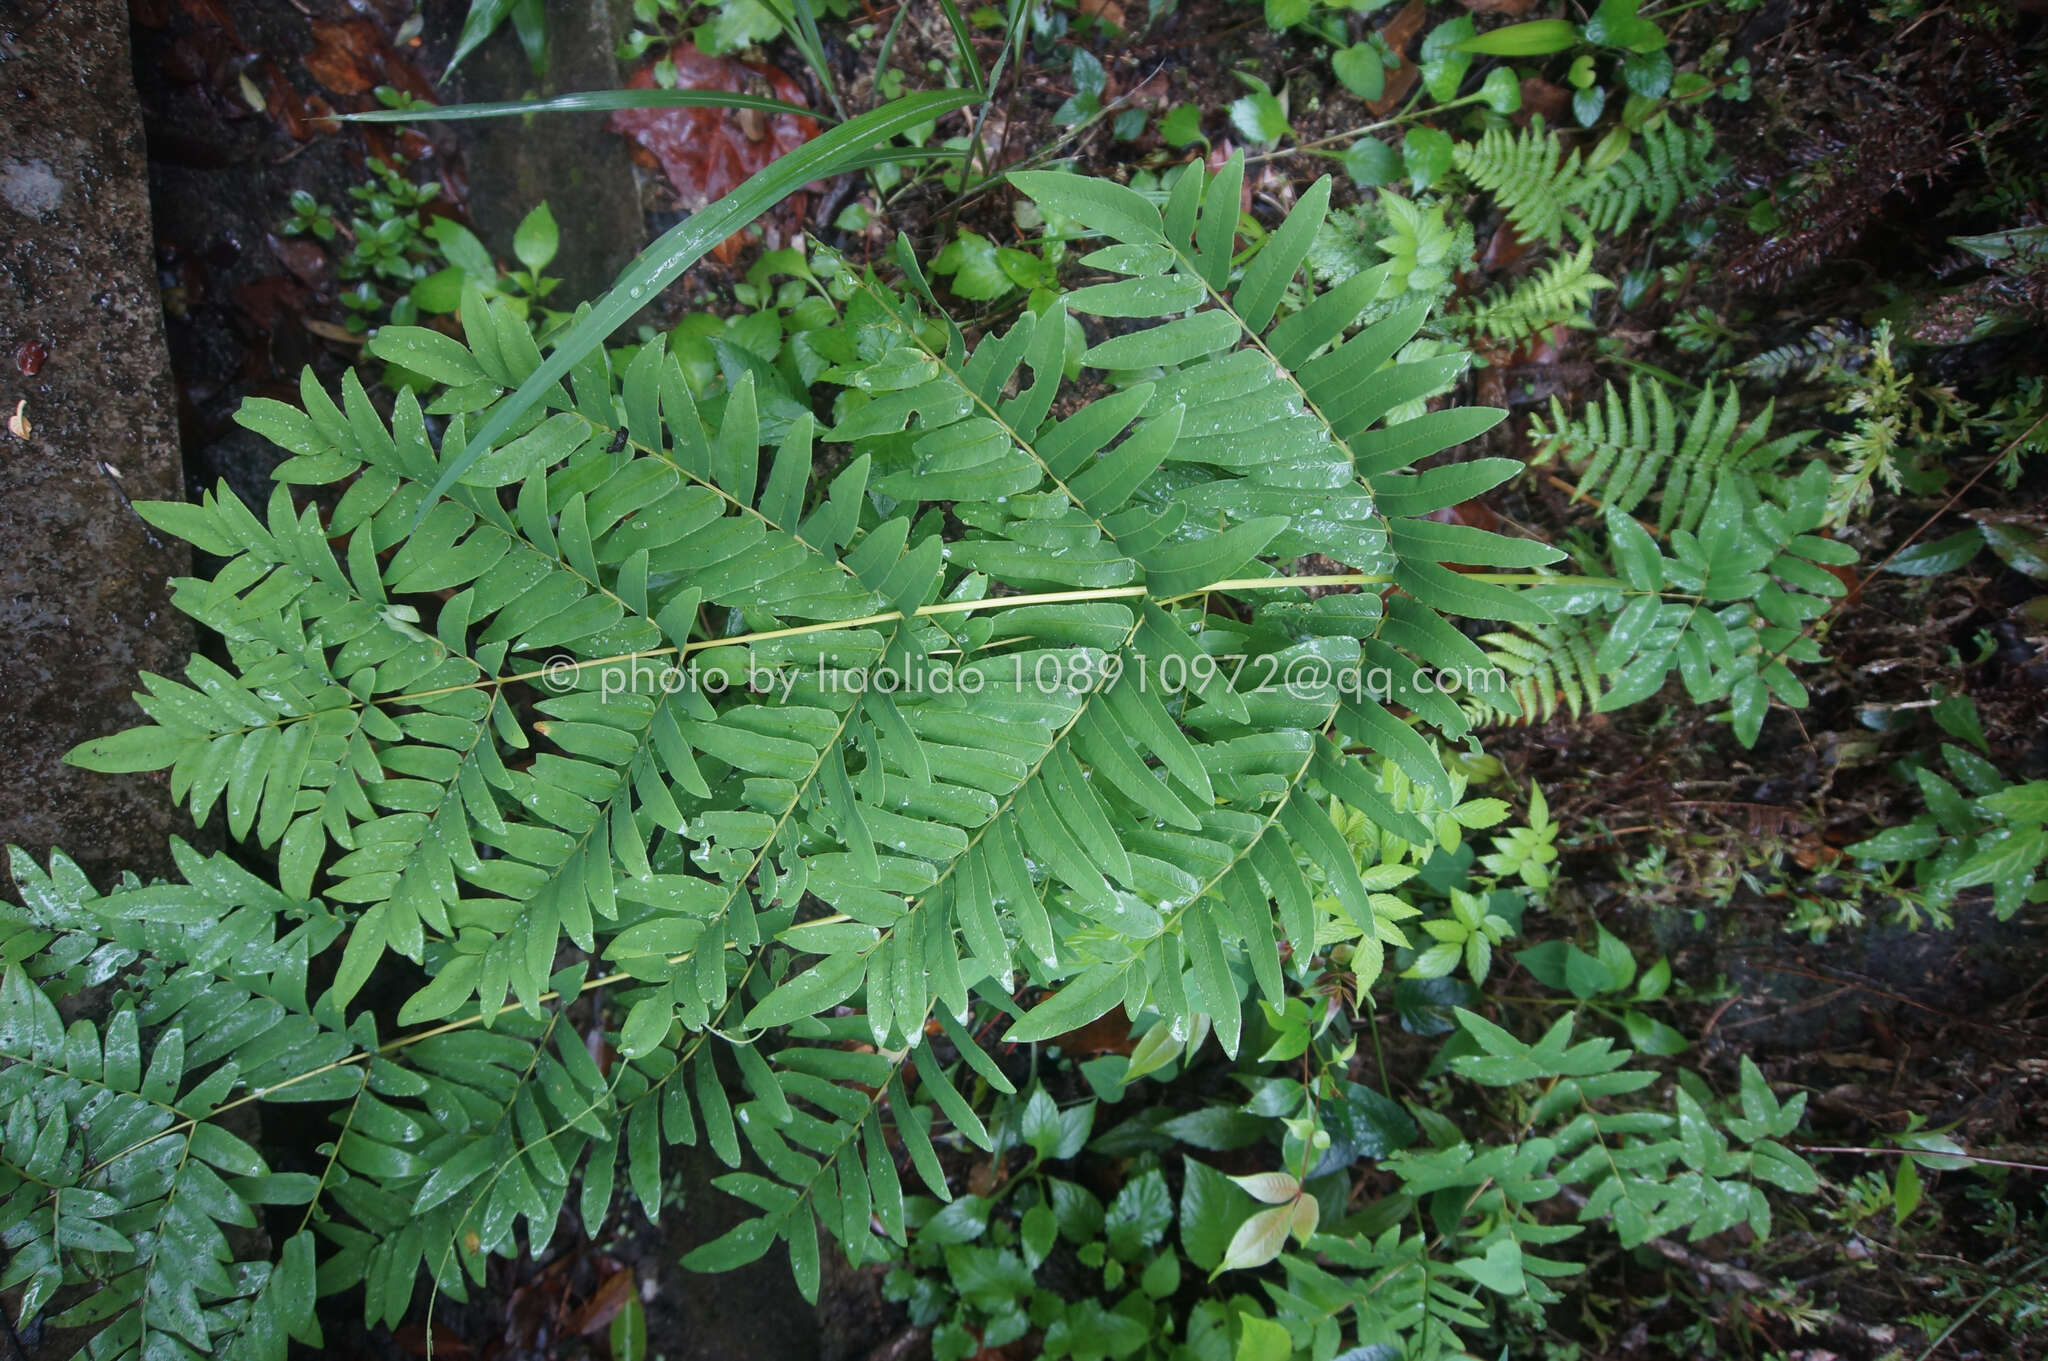 Image of Osmunda japonica Thunb.